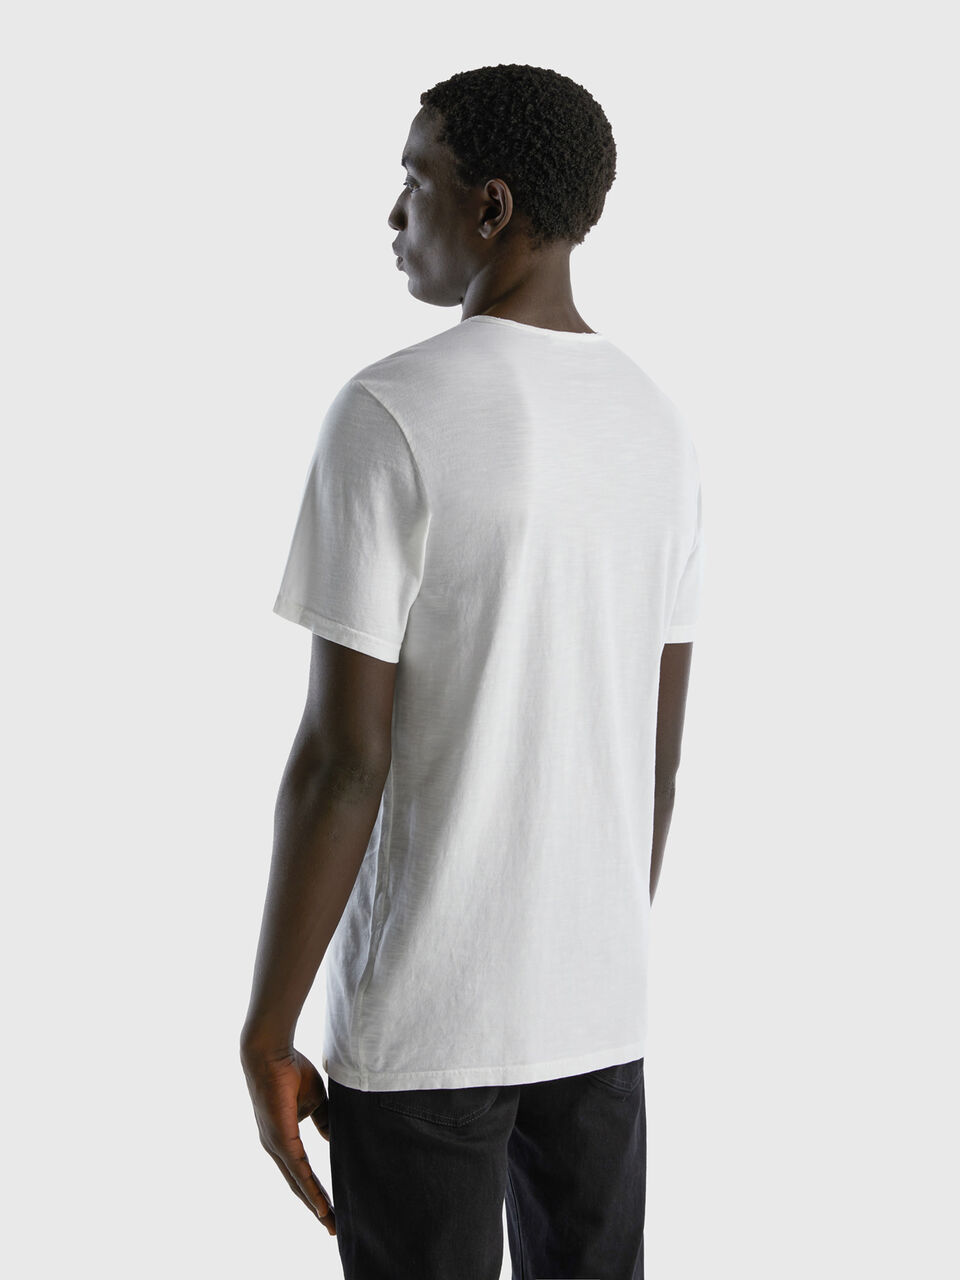 Distribuidor Camiseta Benetton Costa Rica - 100% Cotton Hombre Blancas